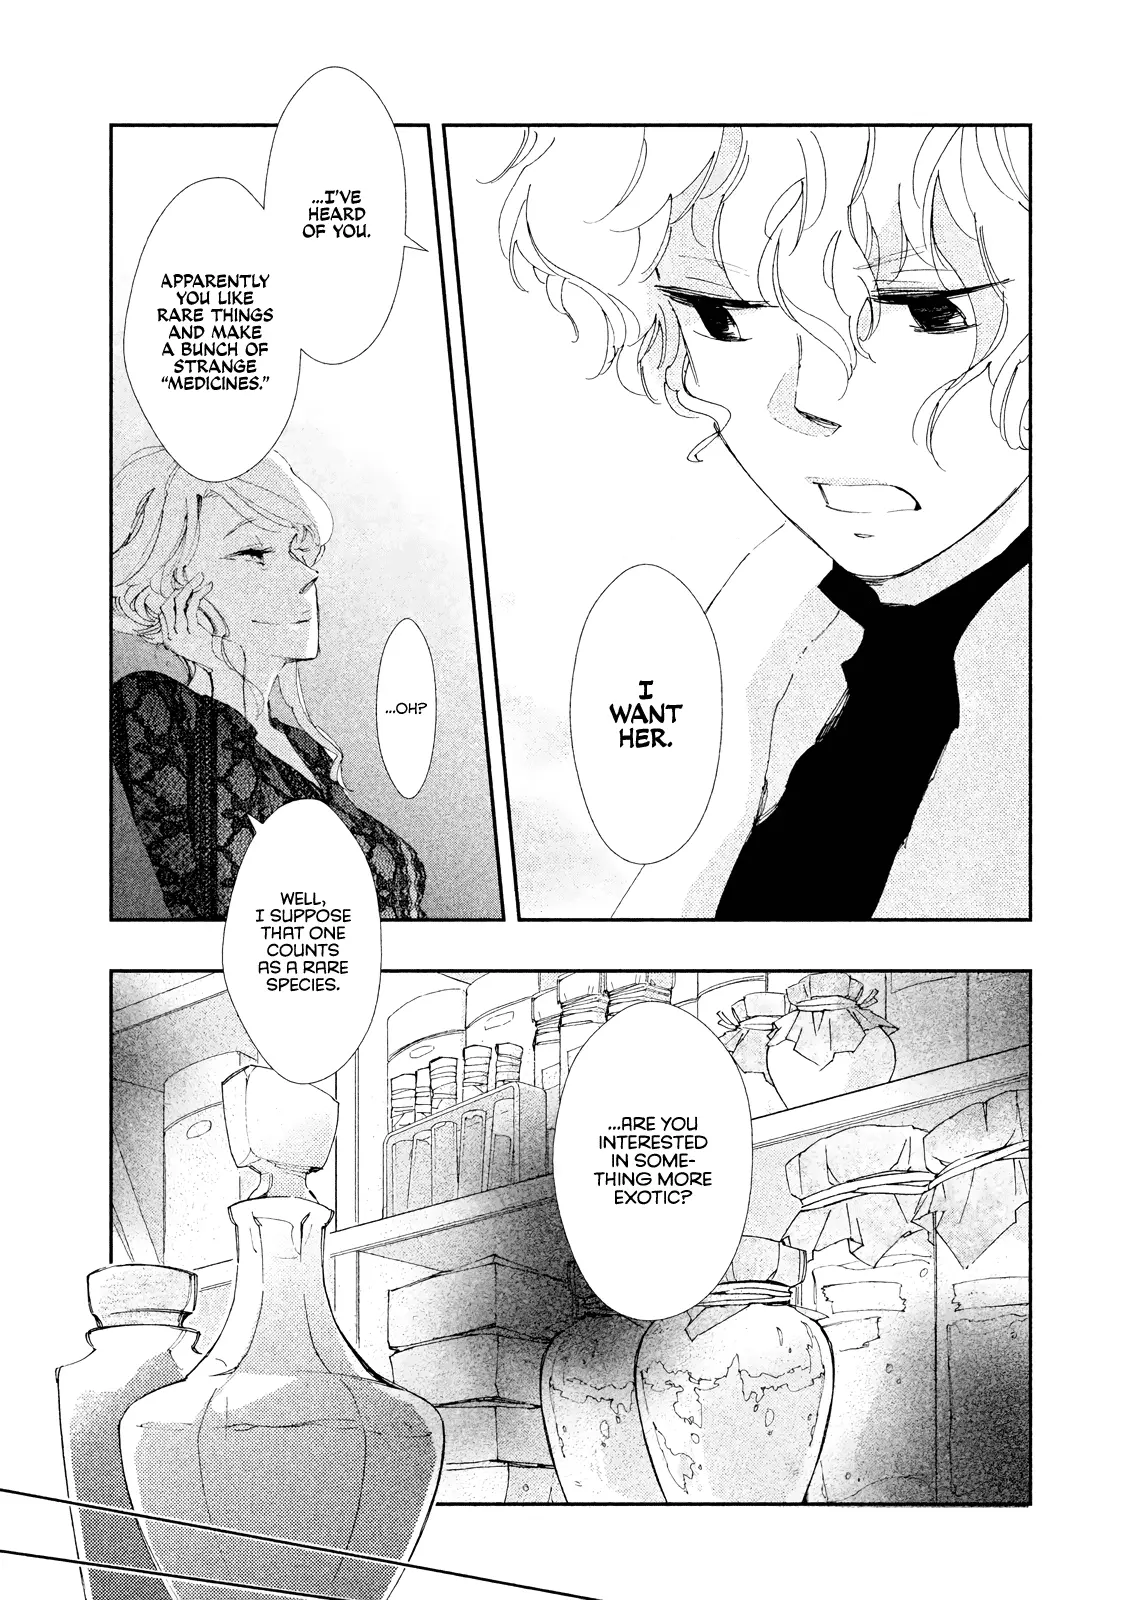 Amegashi - 8 page 14-4124add1